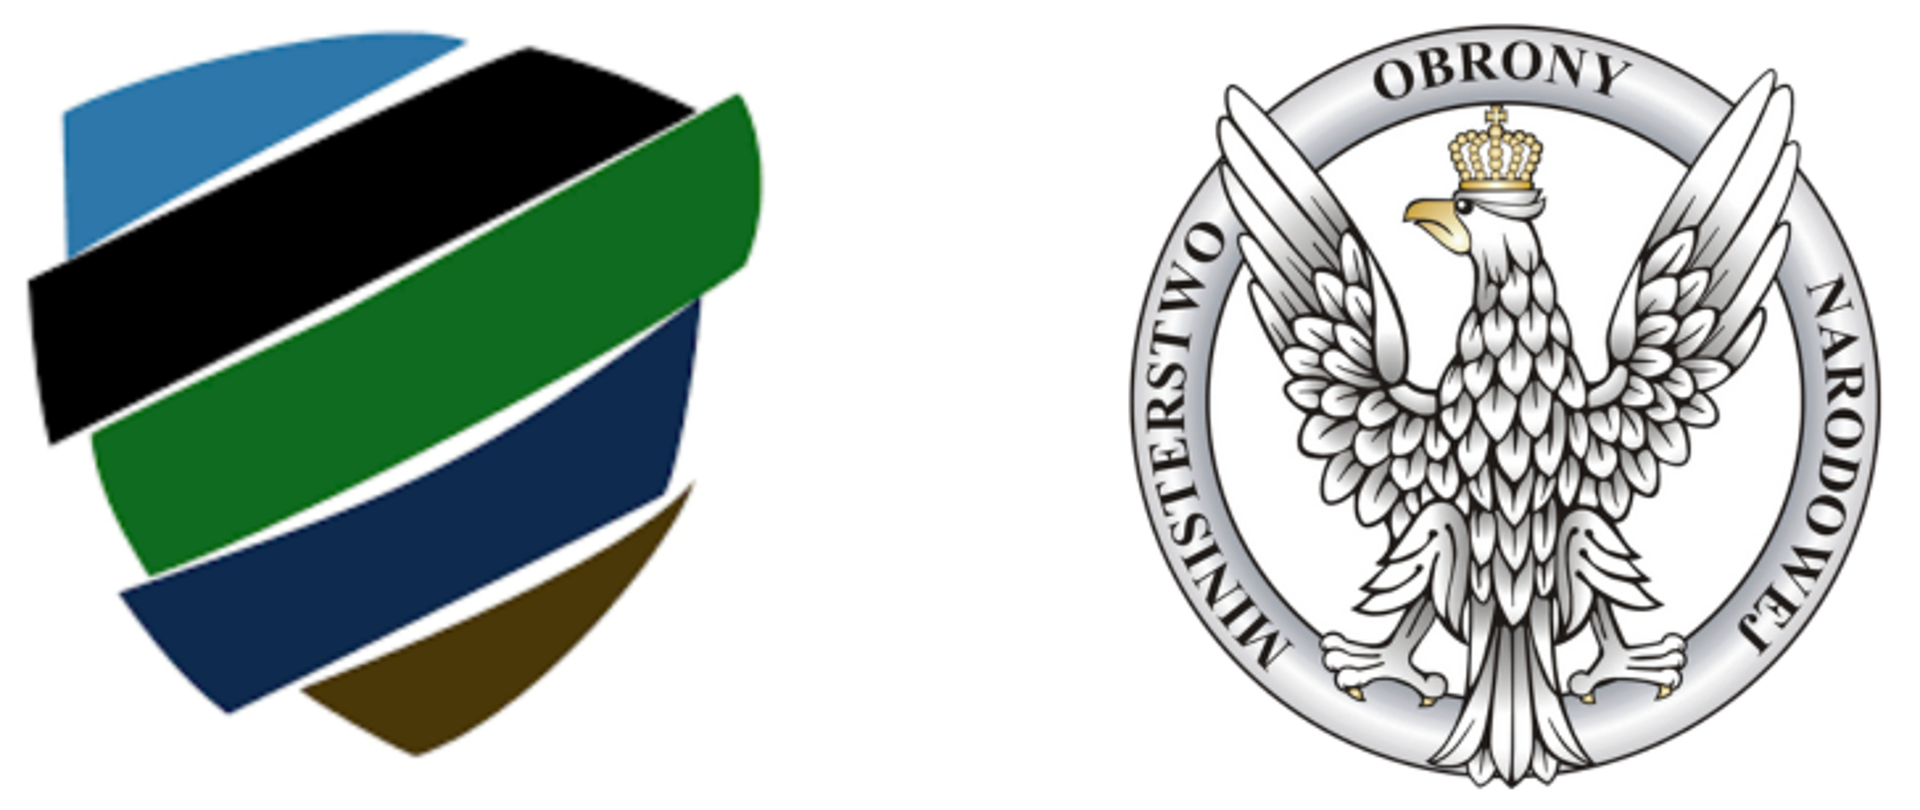 na zdjęciu znajdują się 2 kolorowe logotypy z lewej strony: logo wojskowego centrum rekrutacji, a po prawej stronie logo ministerstwa obrony narodowej